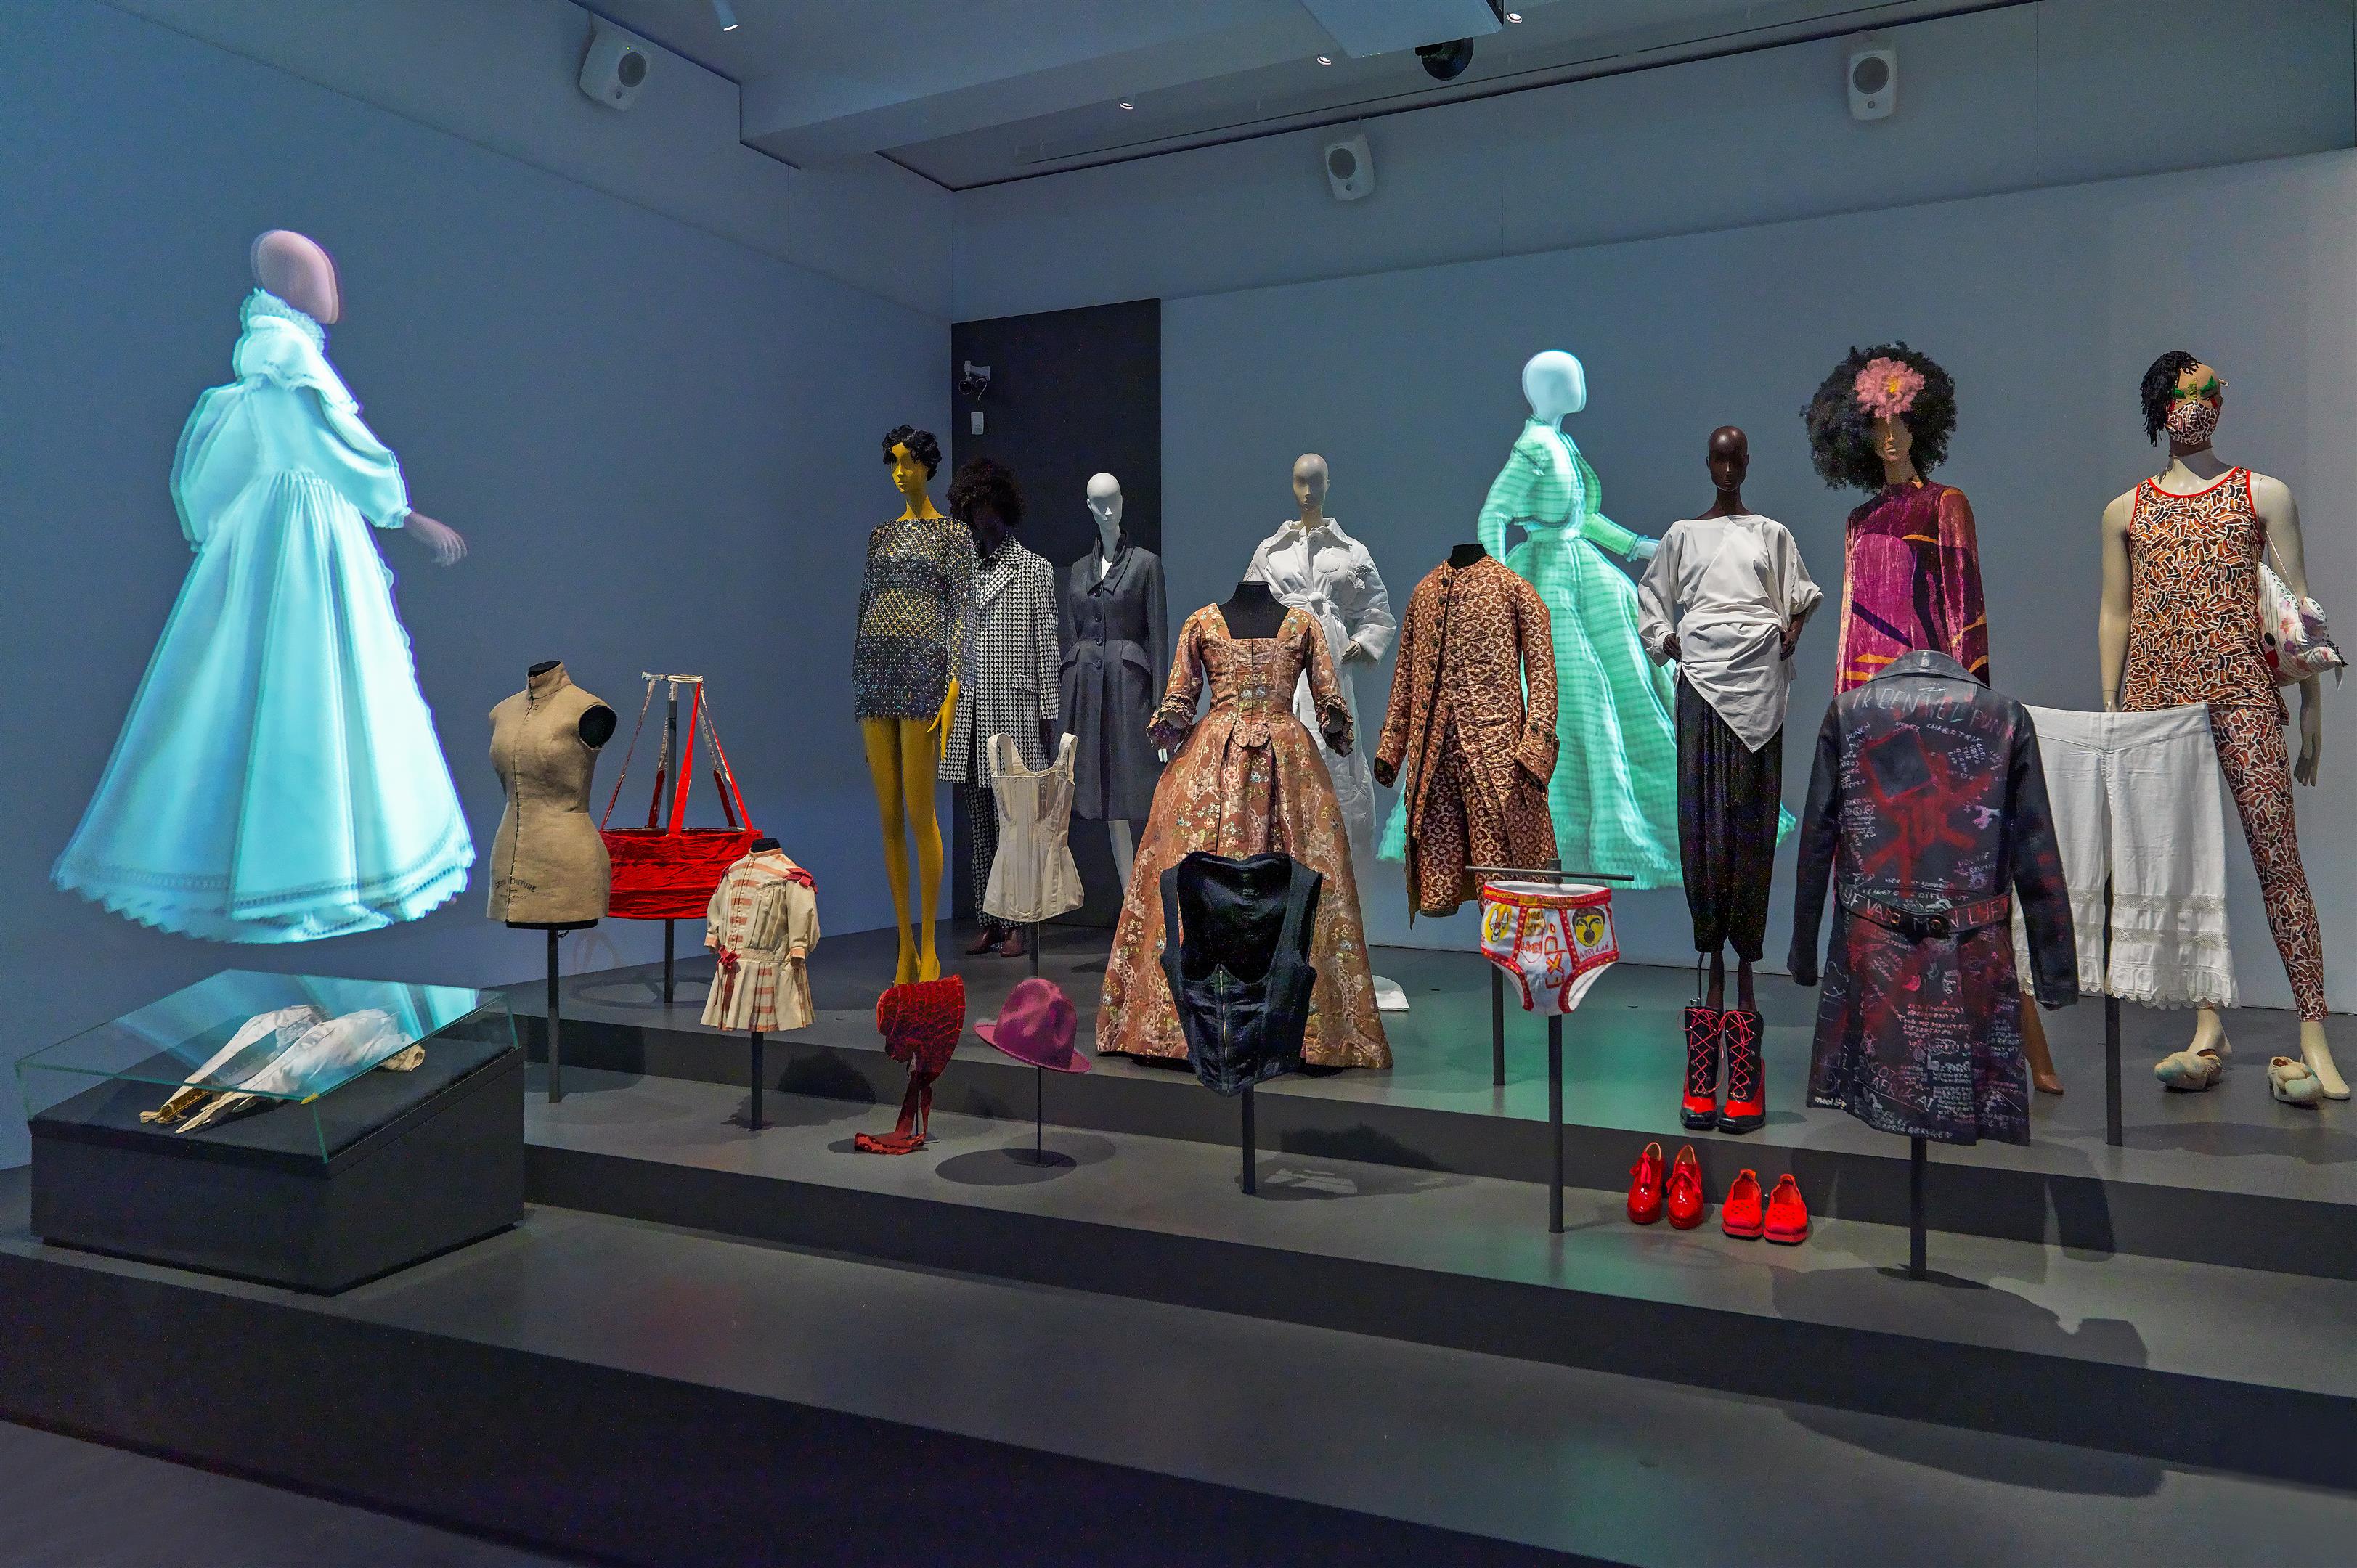 Verschillende kledingstukken gespresenteerd in een museumzaal